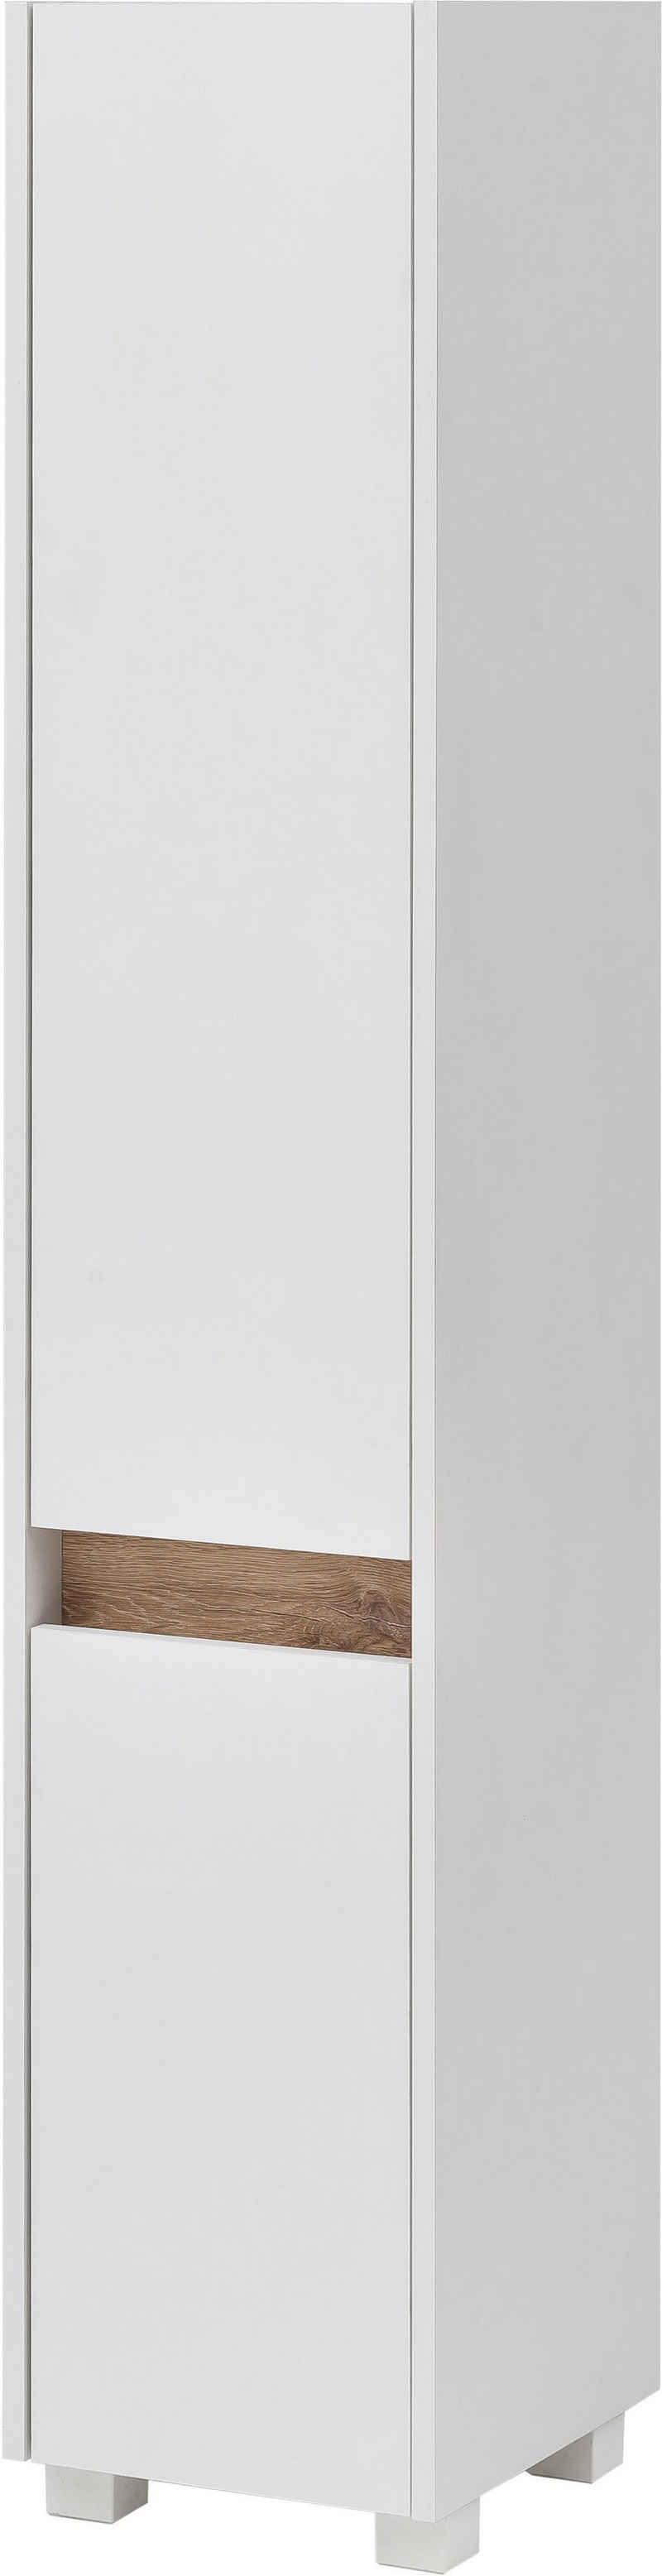 Schildmeyer Hochschrank »Cosmo« Höhe 164,5 cm, Badezimmerschrank mit griffloser Optik, Blende im modernen Wildeiche-Look, wechselbarer Türanschlag